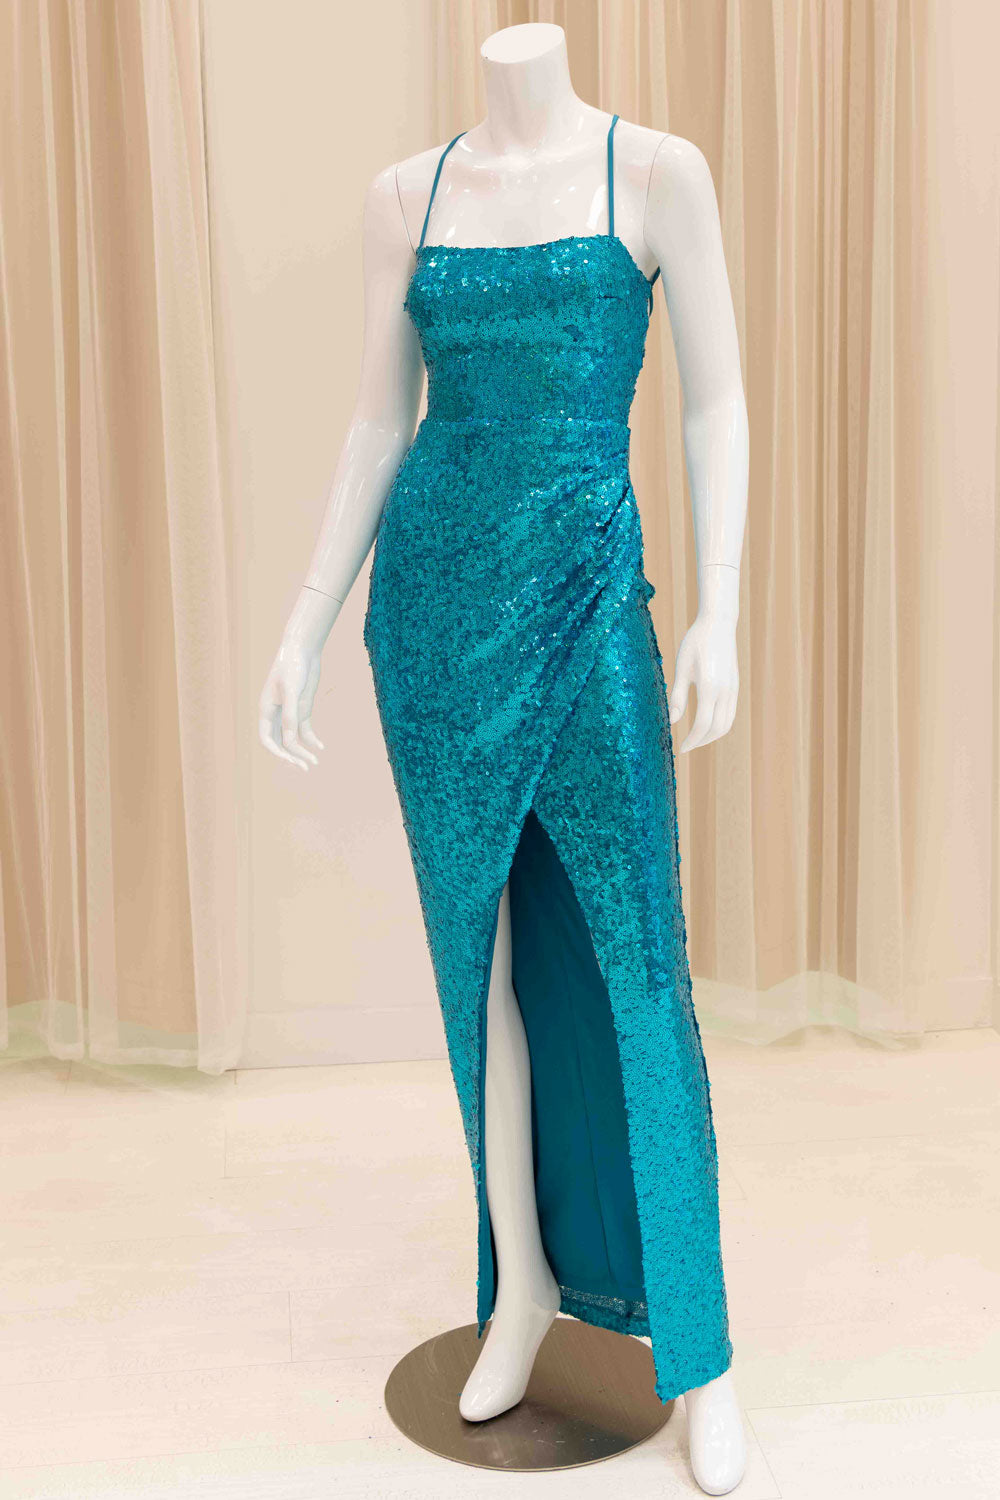 Iris Sequin Evening Gown in Aqua Blue